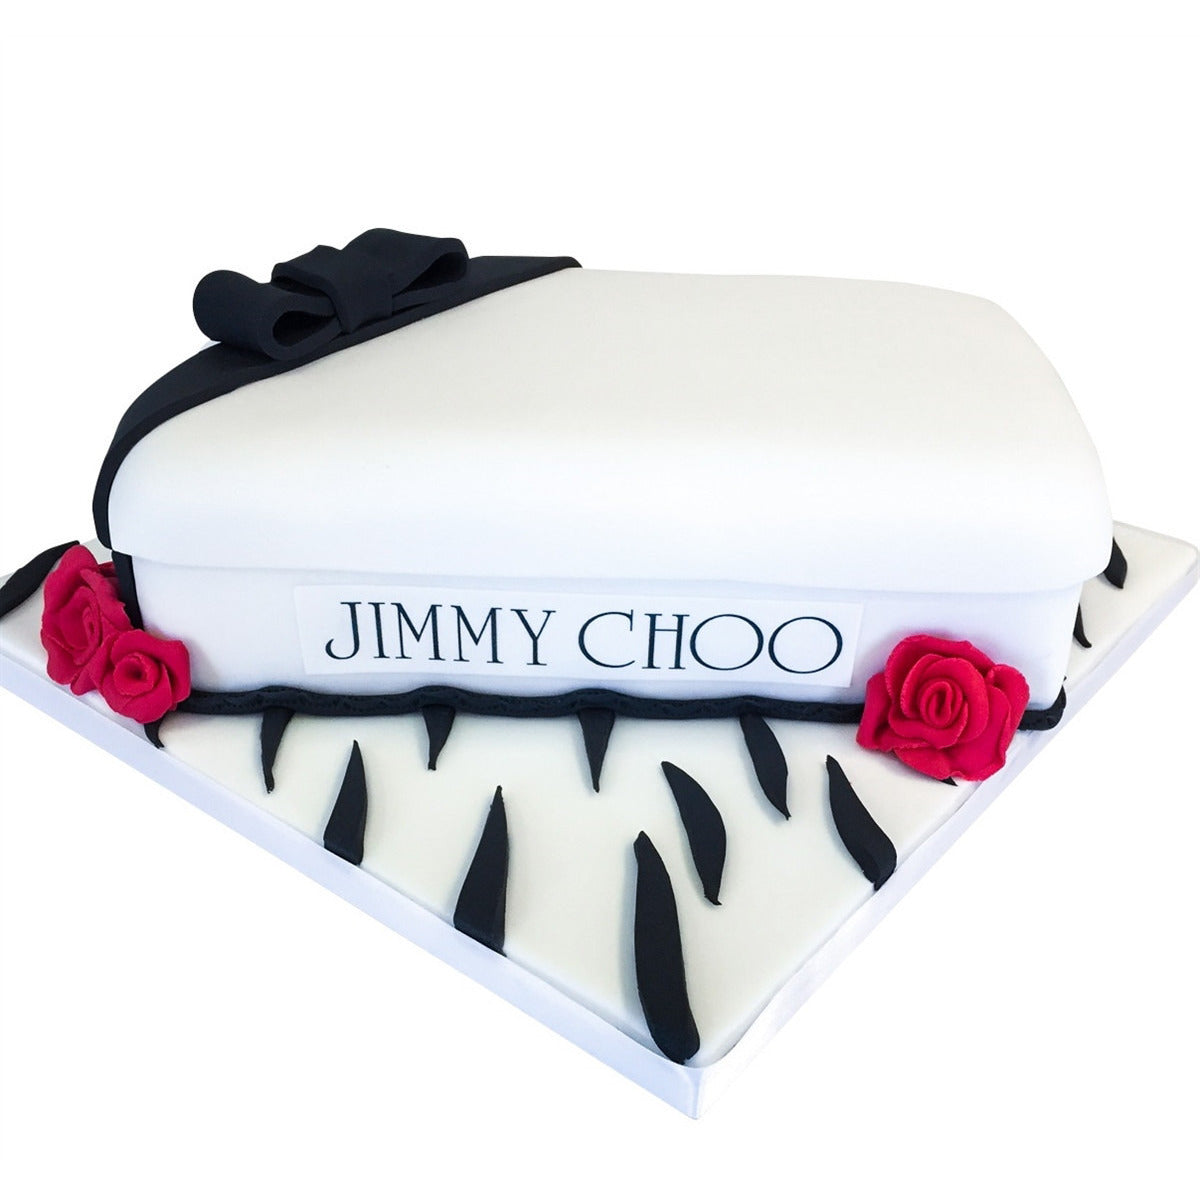 Jimmy Choo Box Cake - Jimmychoo1 2